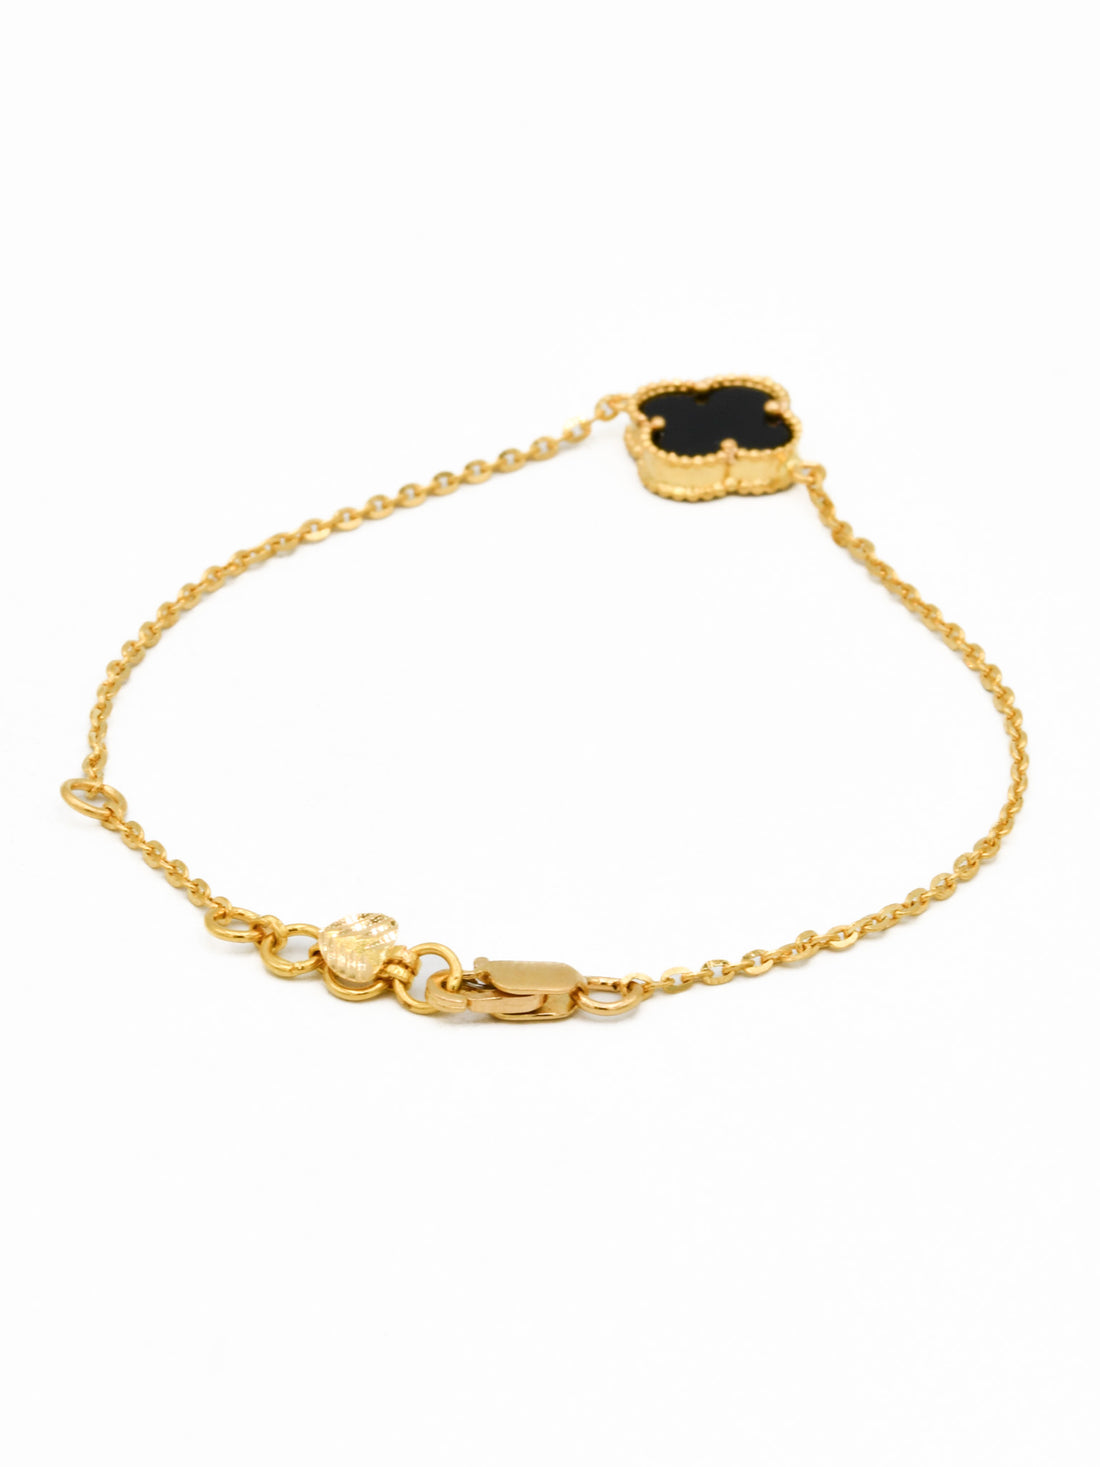 22ct Gold Black Onyx Ladies Bracelet - Roop Darshan